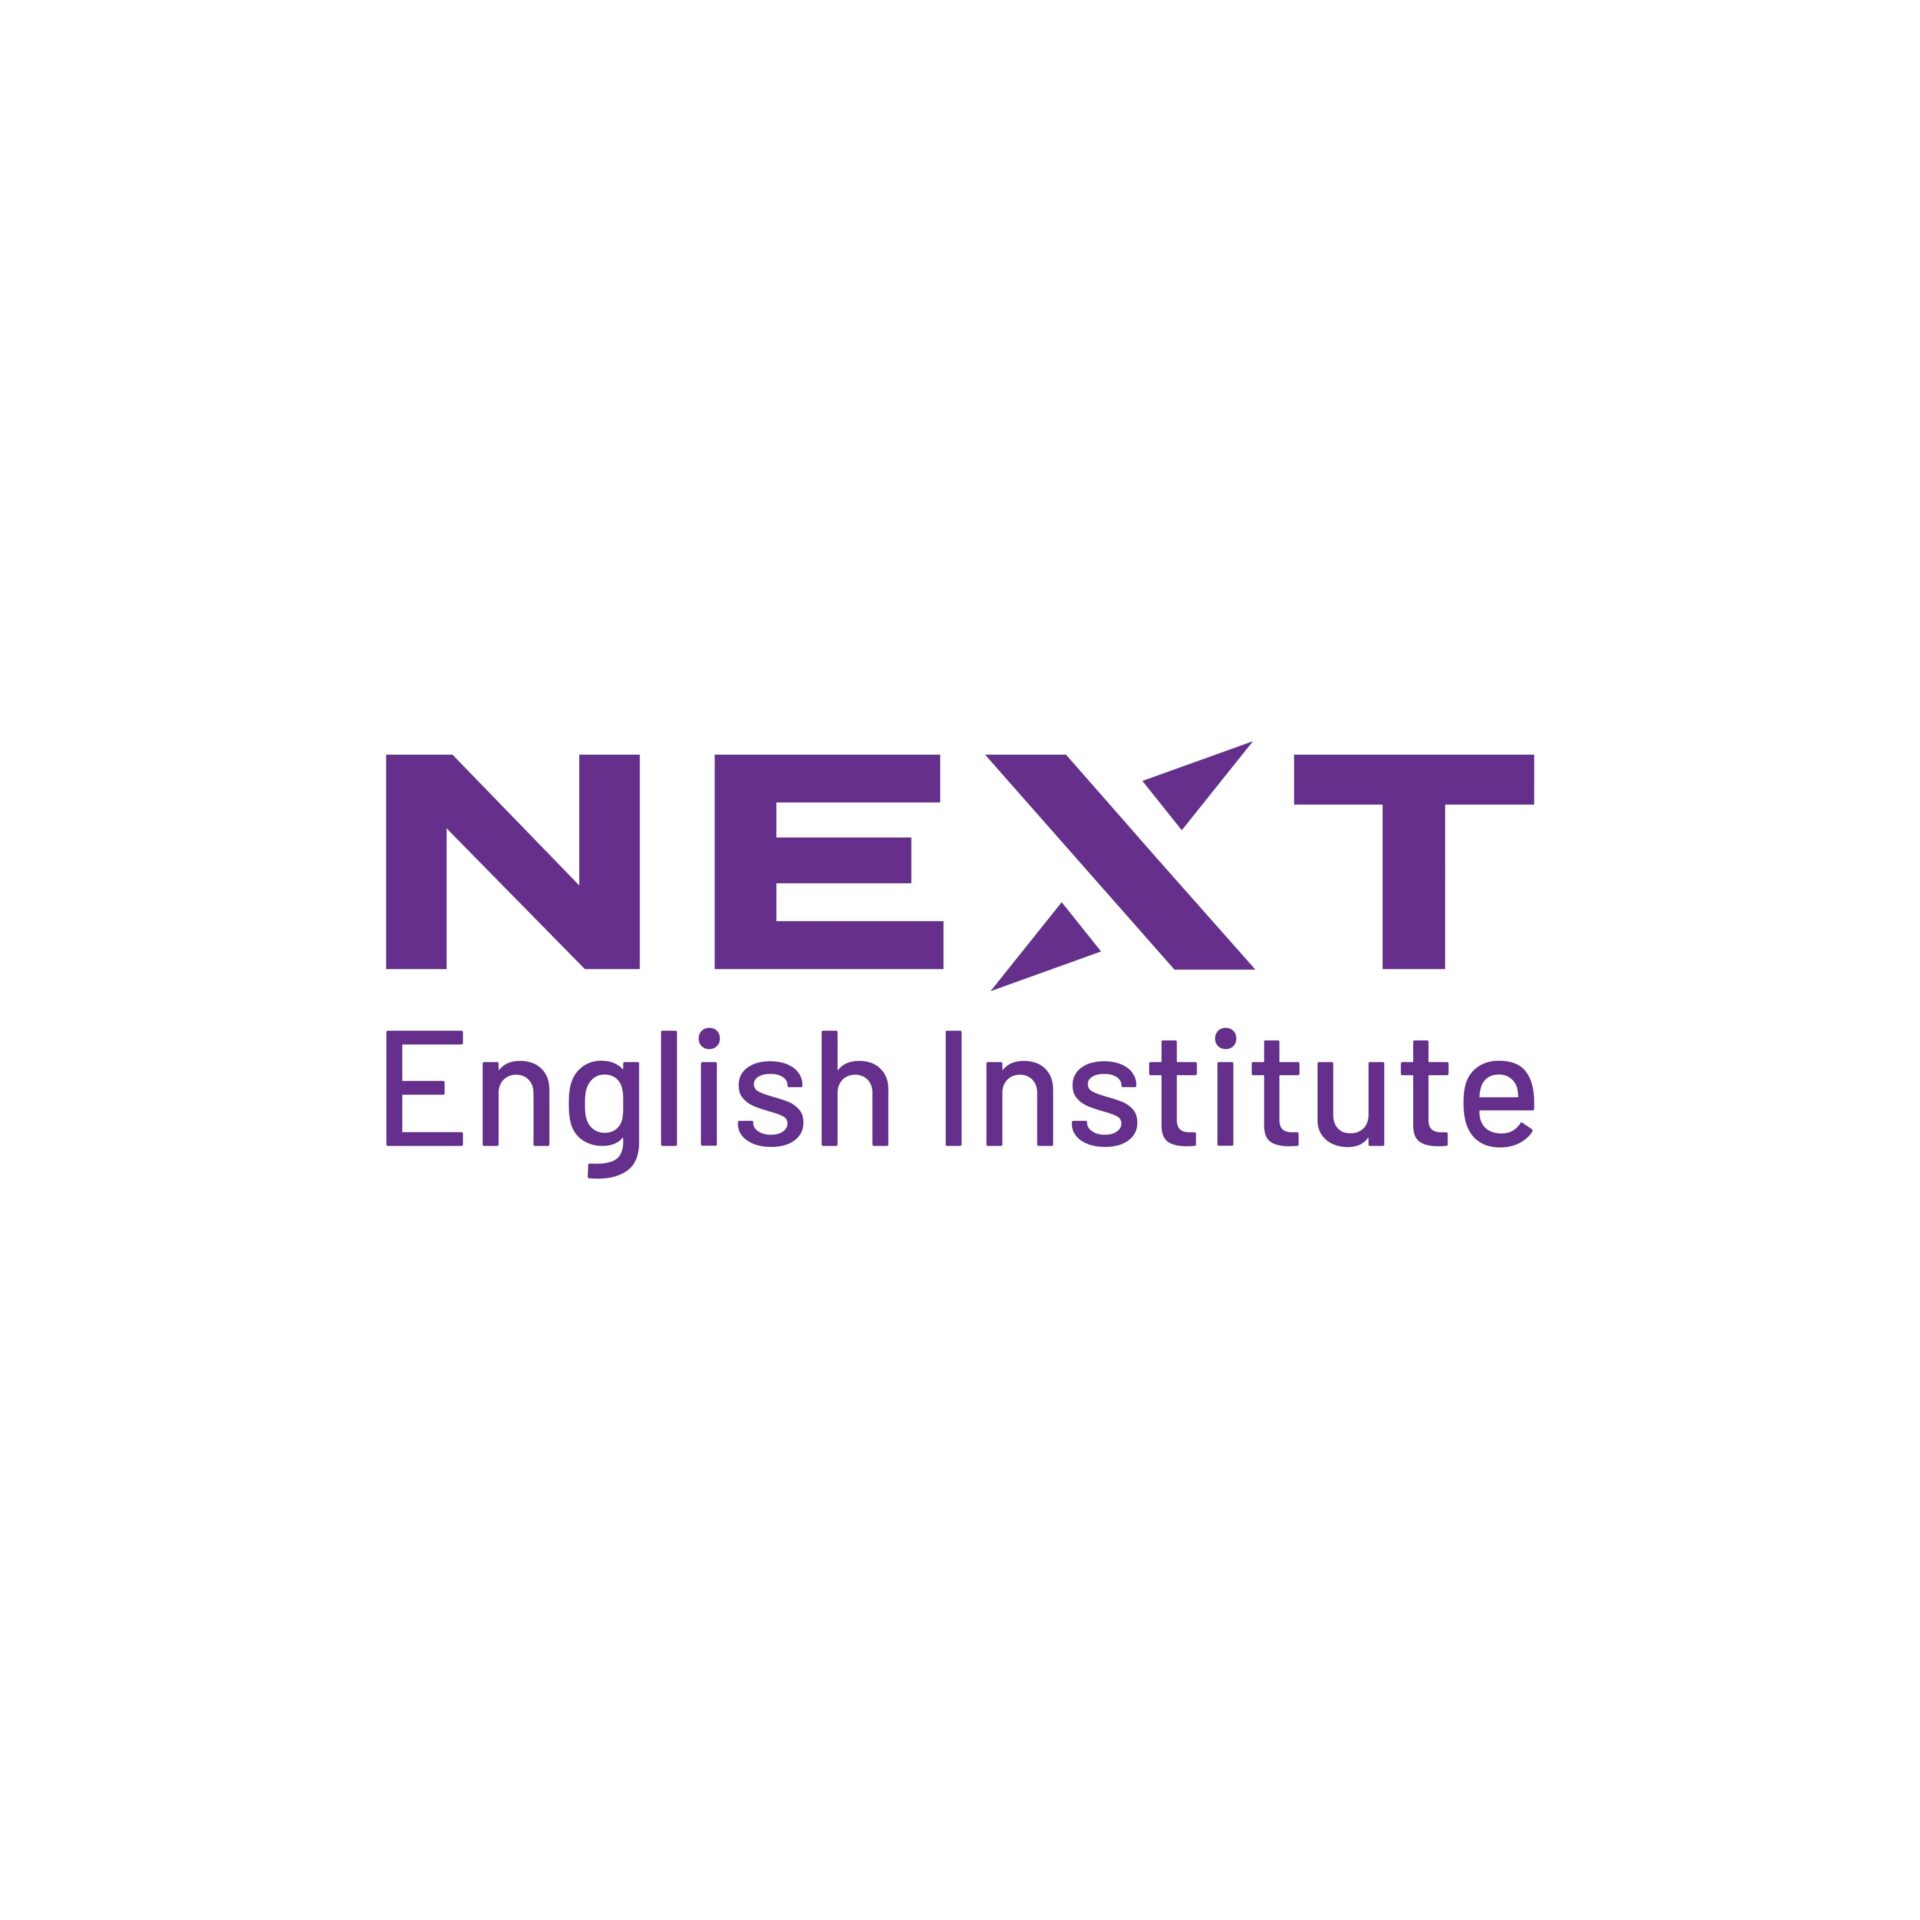 NEXT English Institute Cursos de ingles Academia